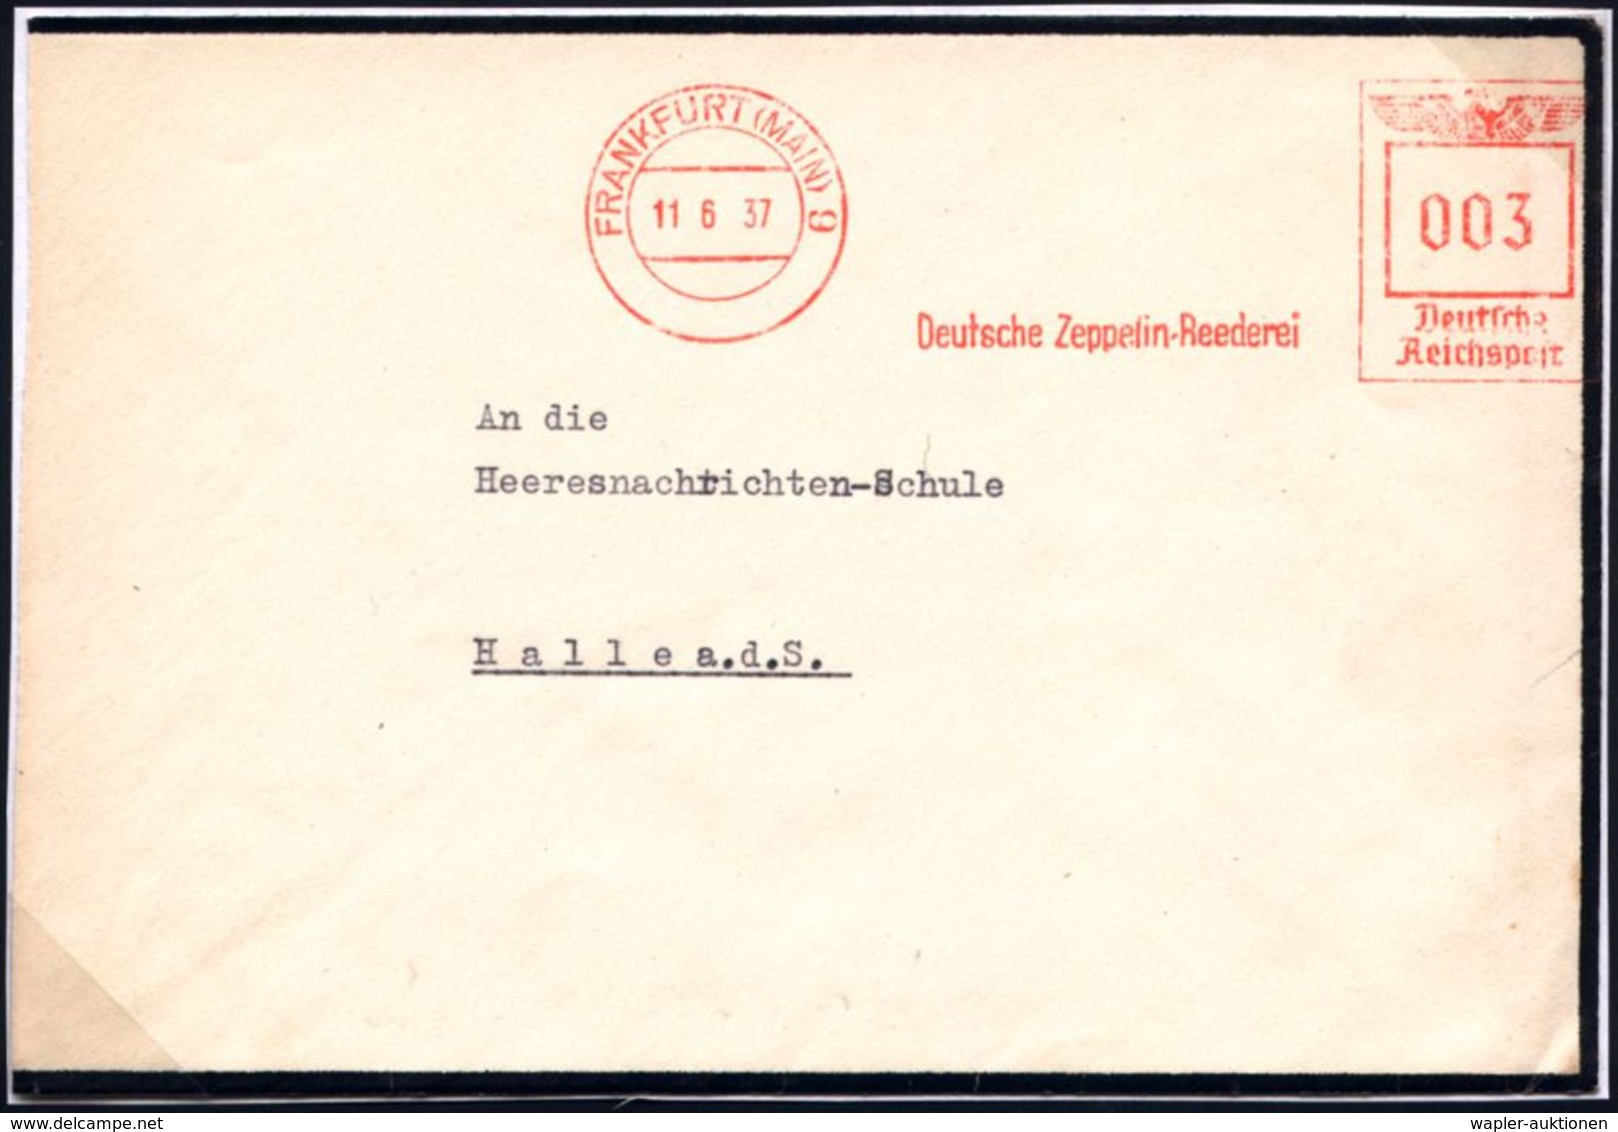 ZEPPELIN-MEMORABILA / ERINNERUNGSBELEGE : FRANKFURT (MAIN)9/ Deutsche Zeppelin-Reederei 1937 (11.6.) AFS 003 Pf. Postamt - Zeppelins